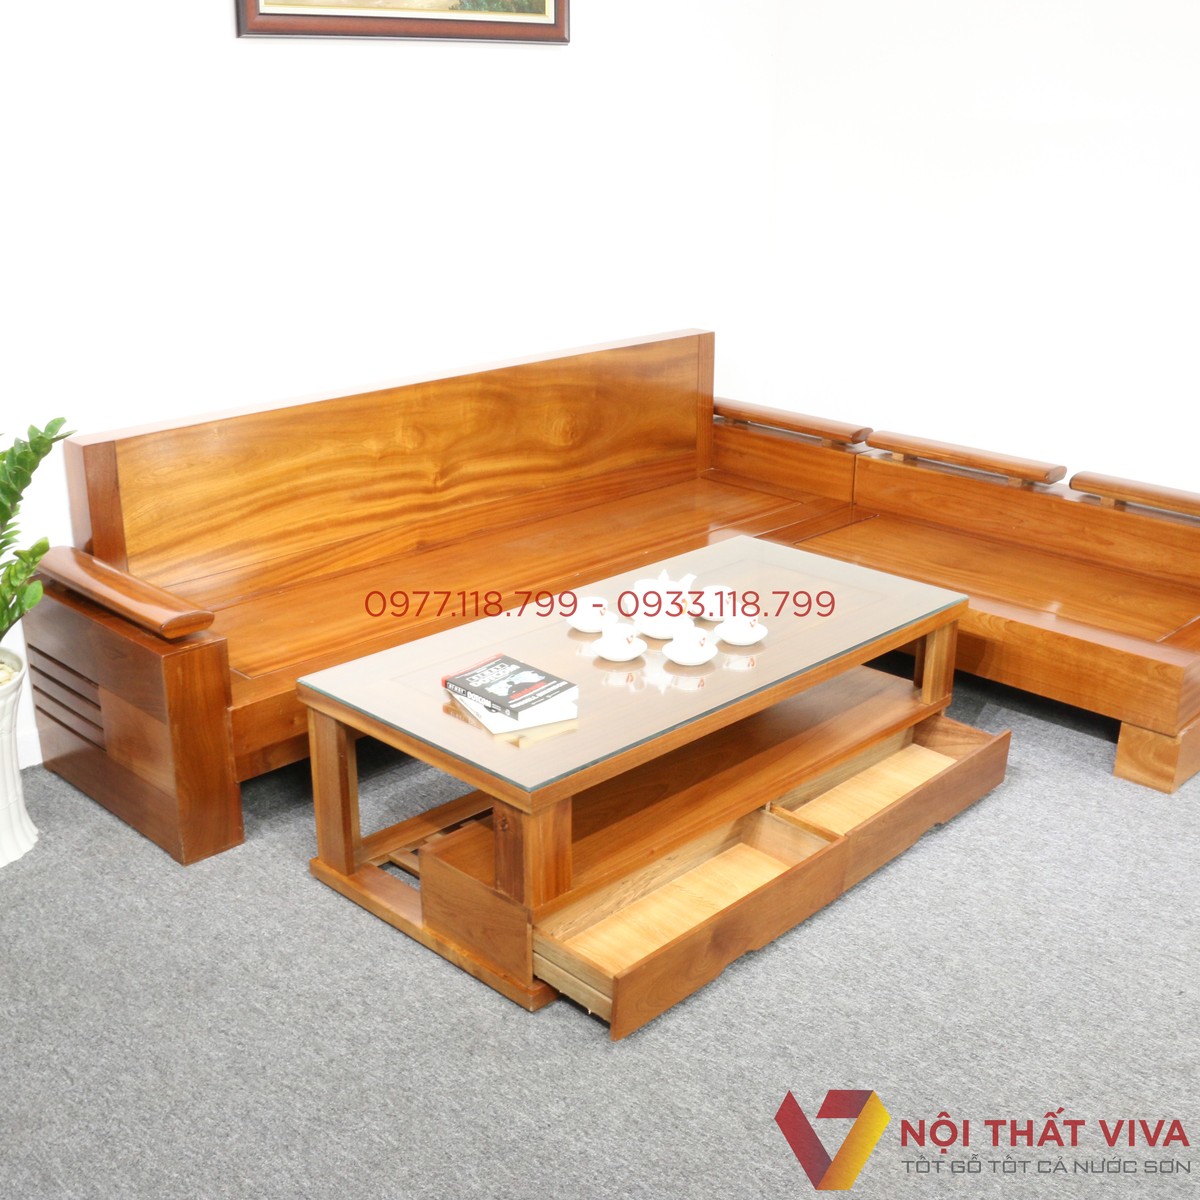 Bộ bàn ghế sofa gỗ chữ L đẹp 2024: Bộ bàn ghế Sofa gỗ chữ L đẹp 2024 được thiết kế để trang trí và nâng cao tính thẩm mỹ cho không gian phòng khách của bạn. Mẫu bàn ghế Sofa này sẽ mang lại sự tiện dụng và thuận lợi cho việc tổ chức các buổi tiệc tùng và họp mặt gia đình. Hãy nhanh tay đến với cửa hàng của chúng tôi để có được bộ bàn ghế Sofa gỗ chữ L đẹp 2024 cho căn phòng của bạn.